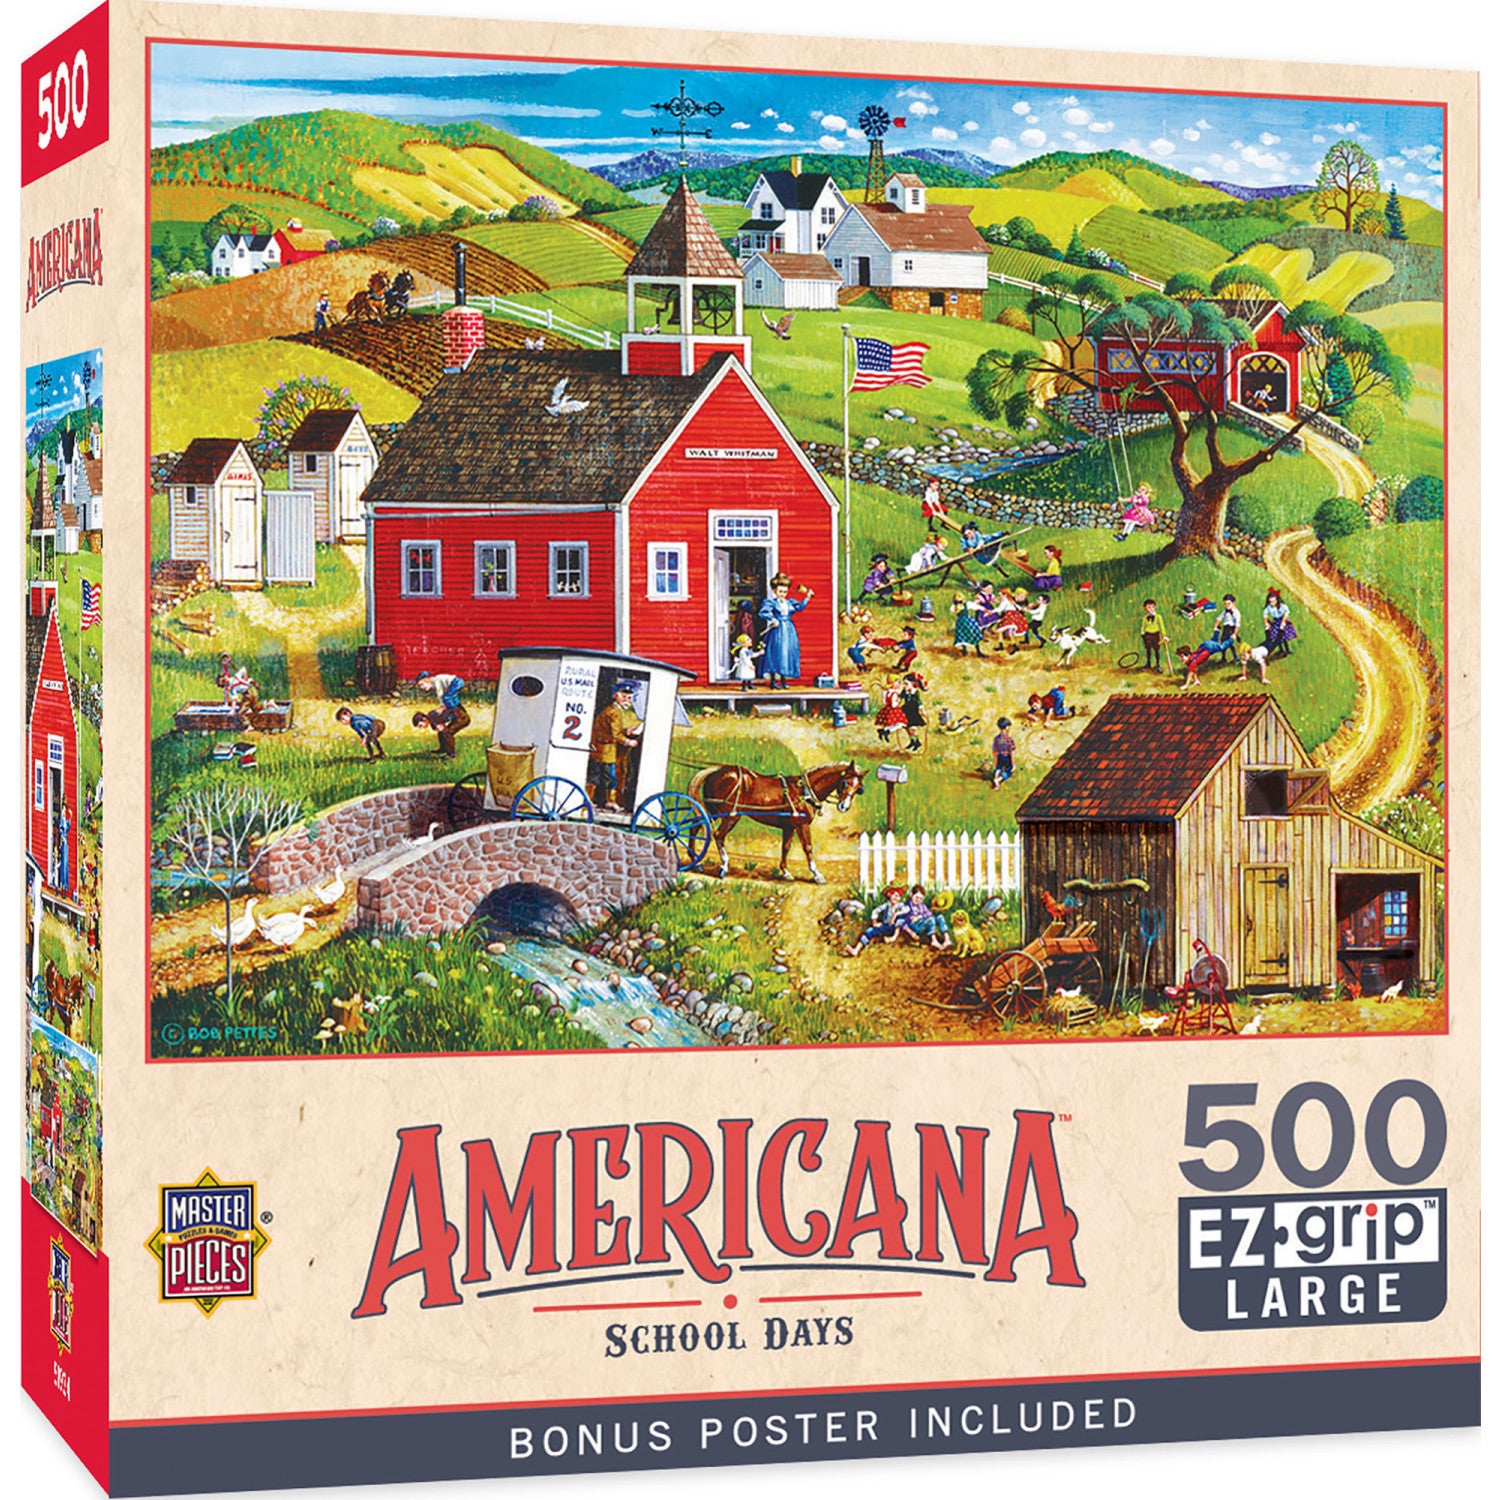 Americana - School Days 500 Piece EZ Grip Jigsaw Puzzle